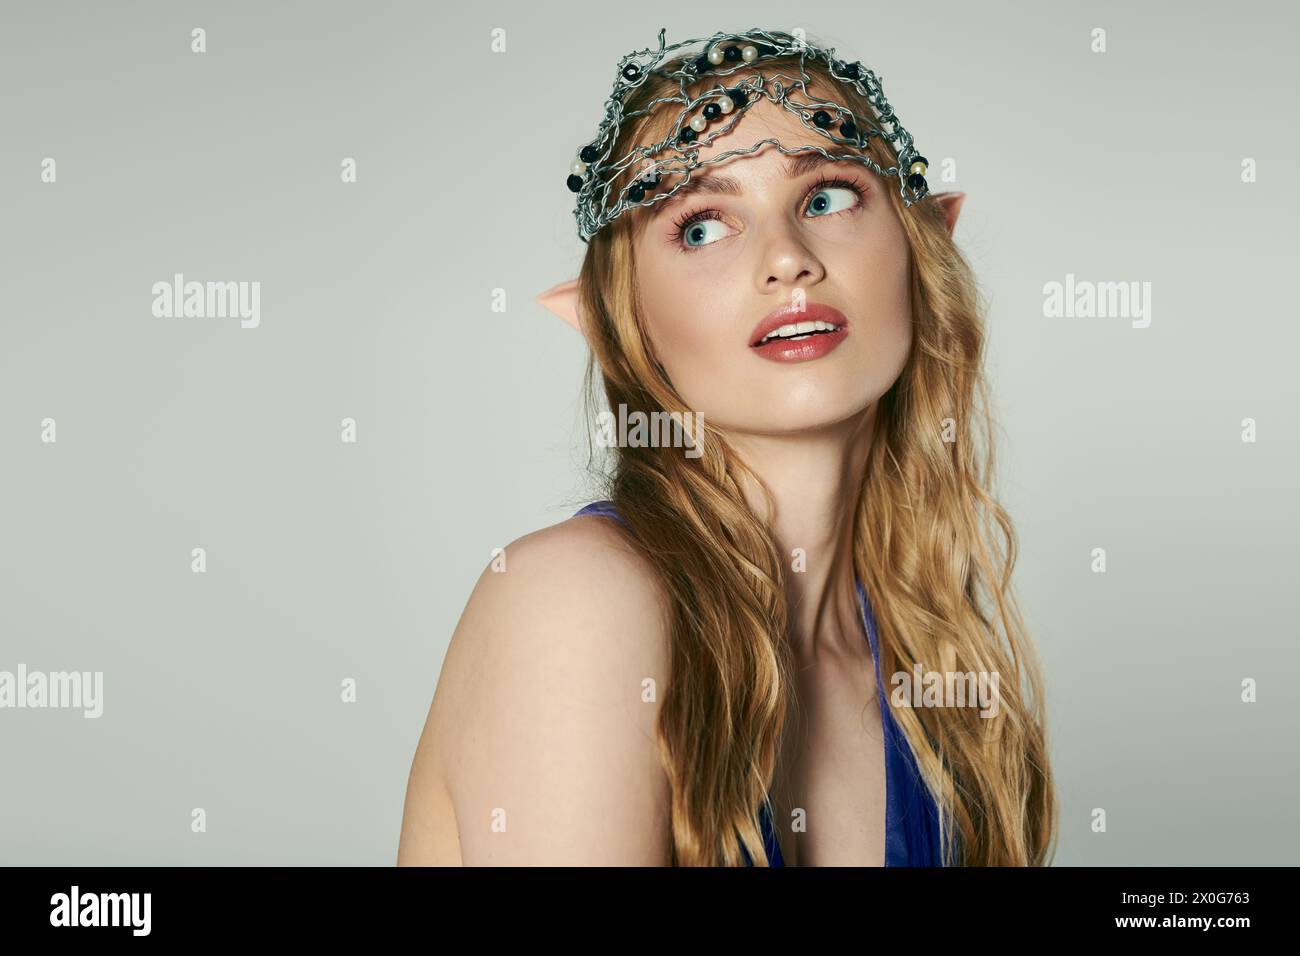 Une jeune femme portant une couronne, incarnant une princesse elfe ressemblant à une fée dans un cadre de studio fantaisiste. Banque D'Images